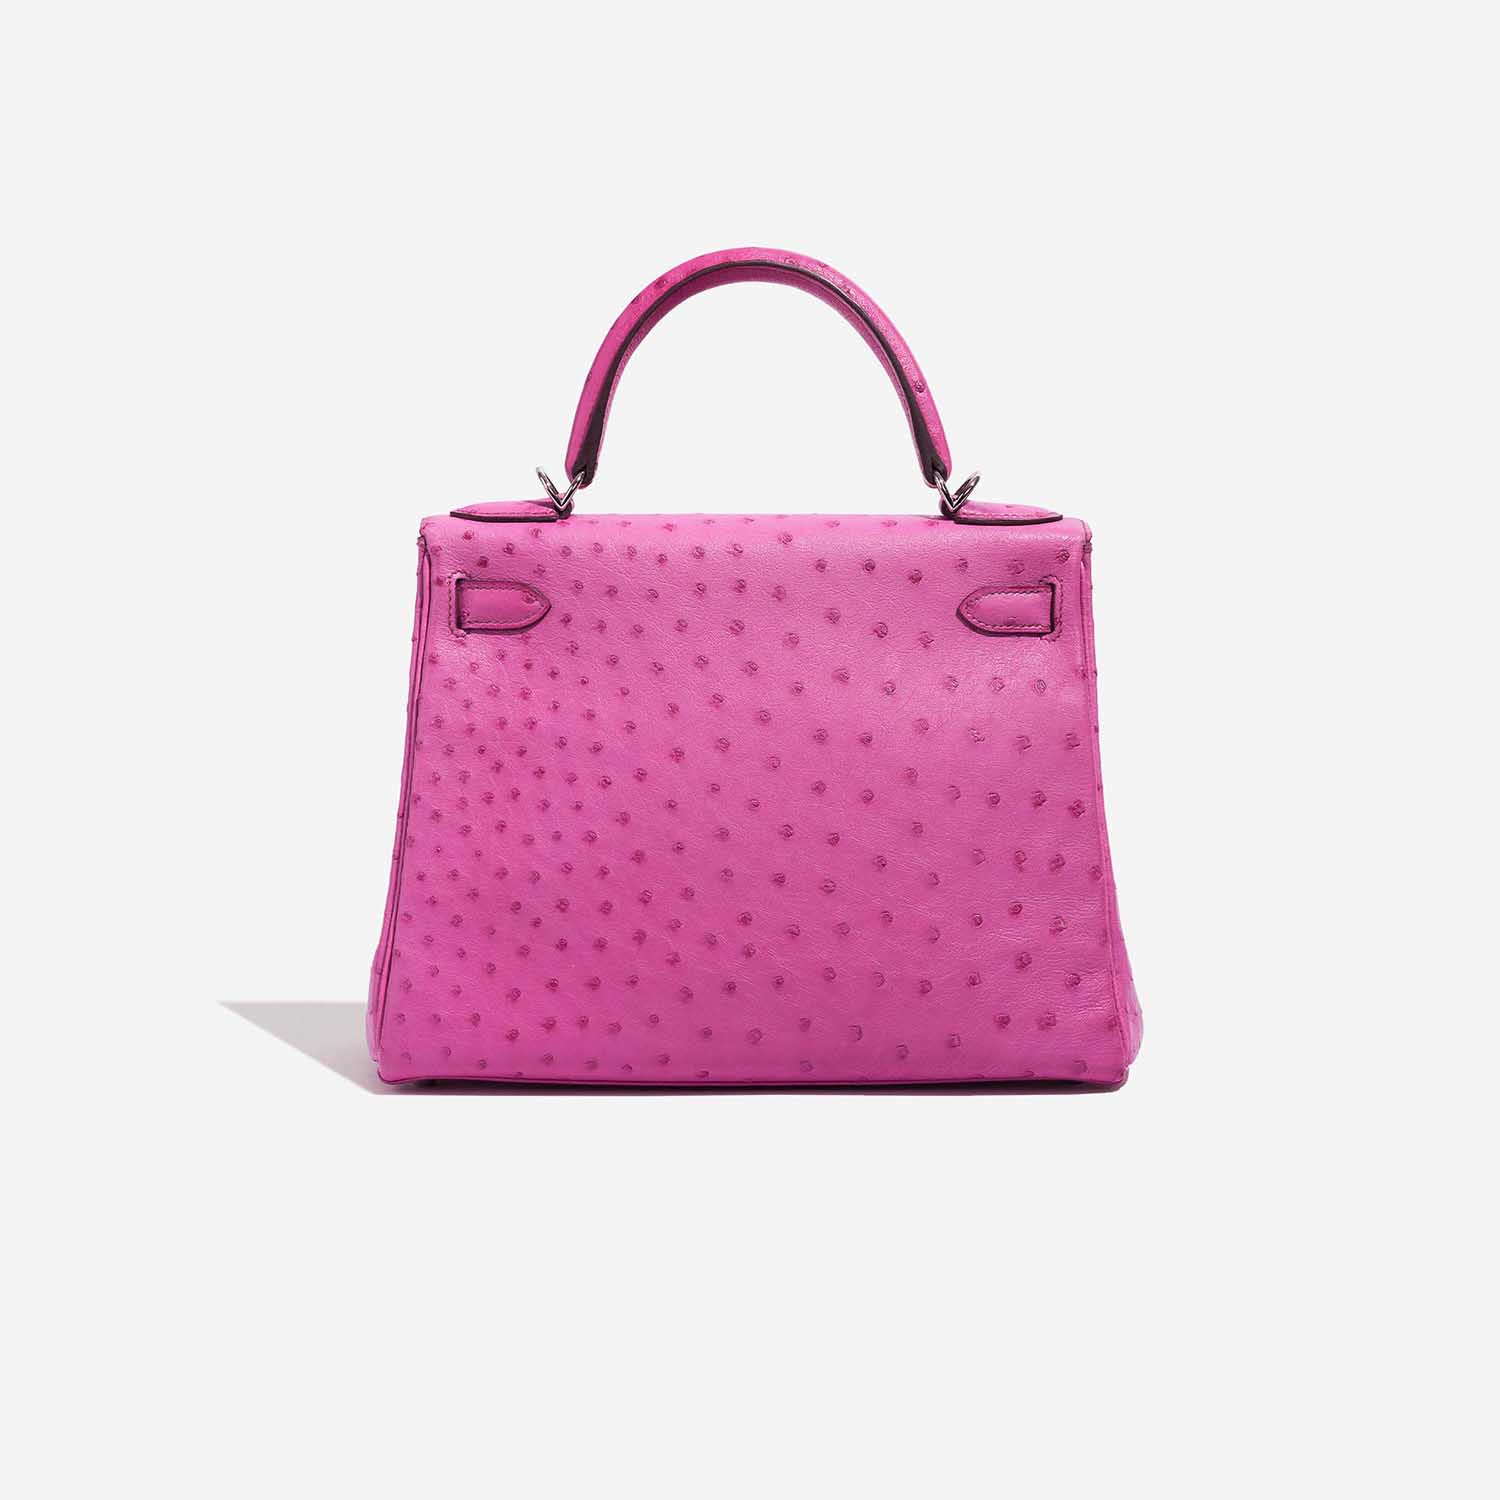 Pre-owned Hermès Tasche Kelly 28 Ostrich Fuchsia Pink Back | Verkaufen Sie Ihre Designer-Tasche auf Saclab.com